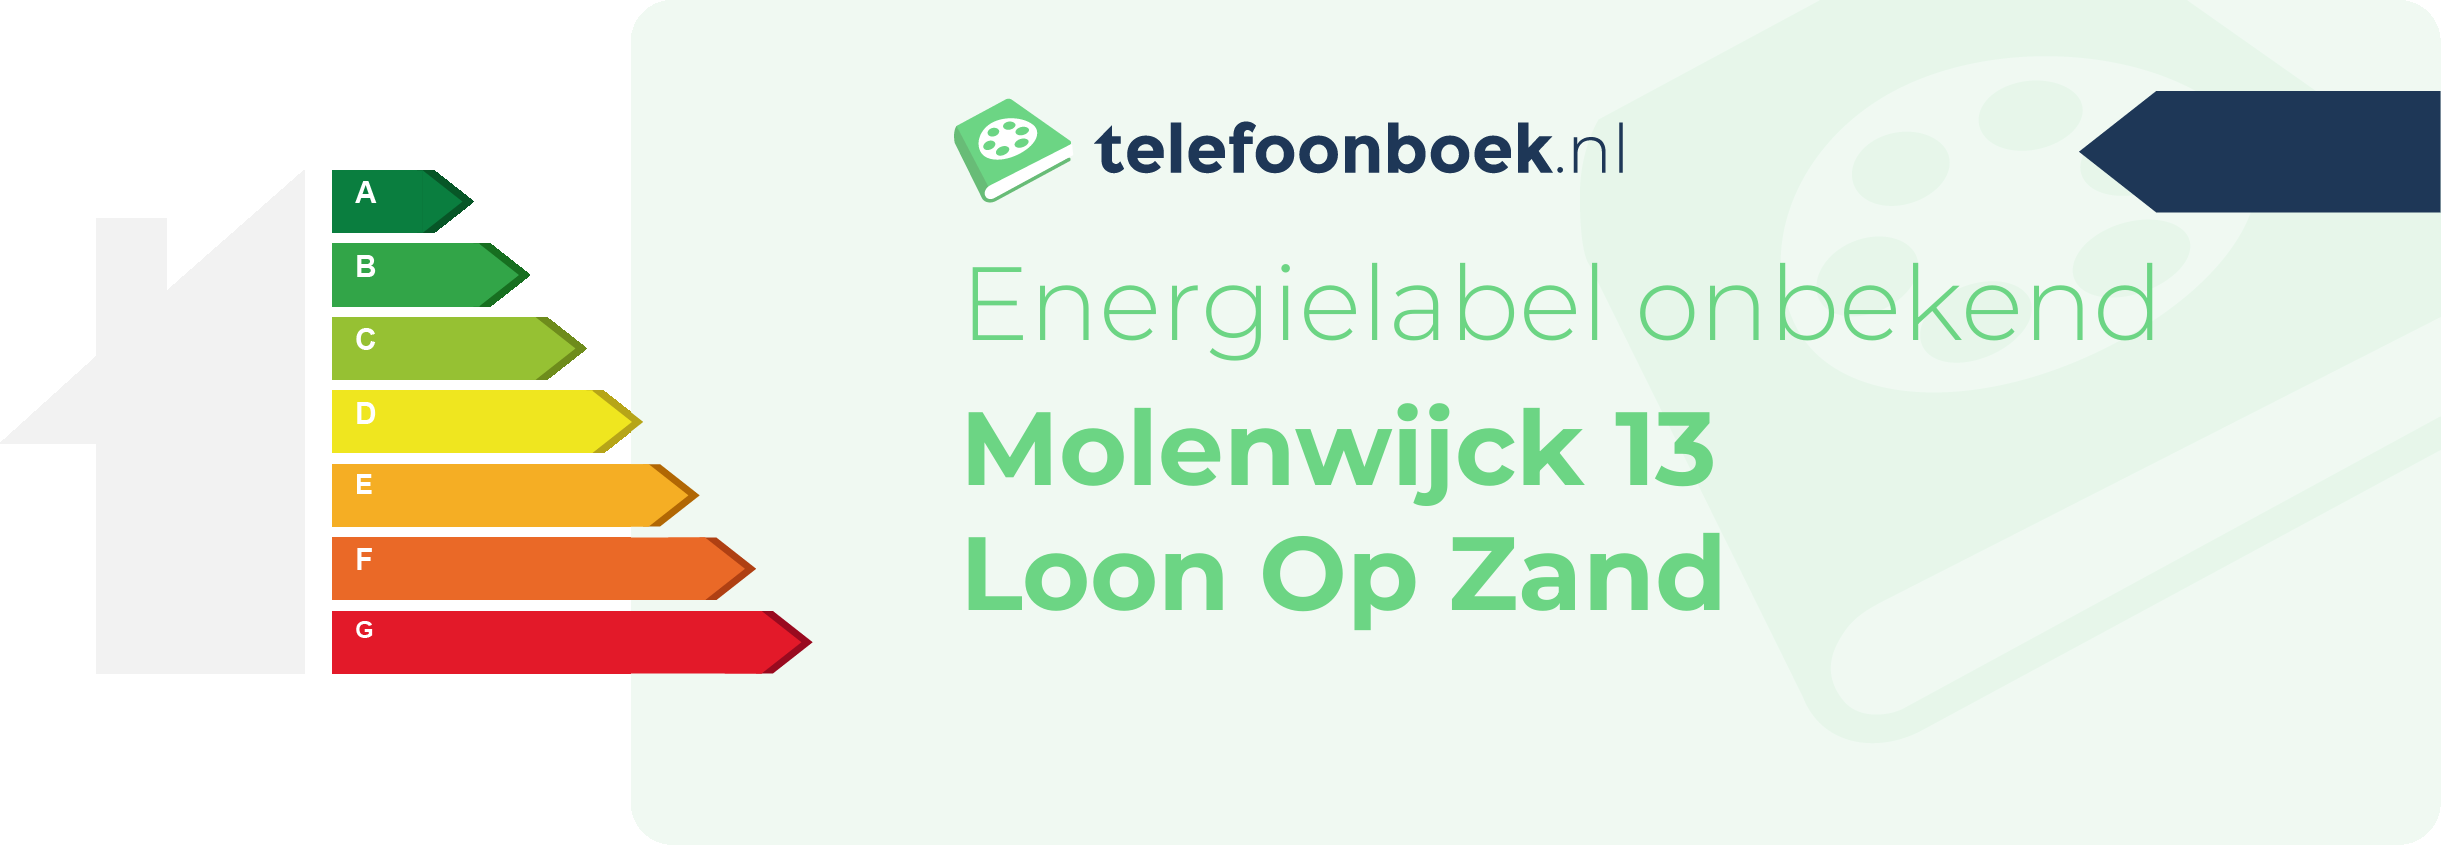 Energielabel Molenwijck 13 Loon Op Zand